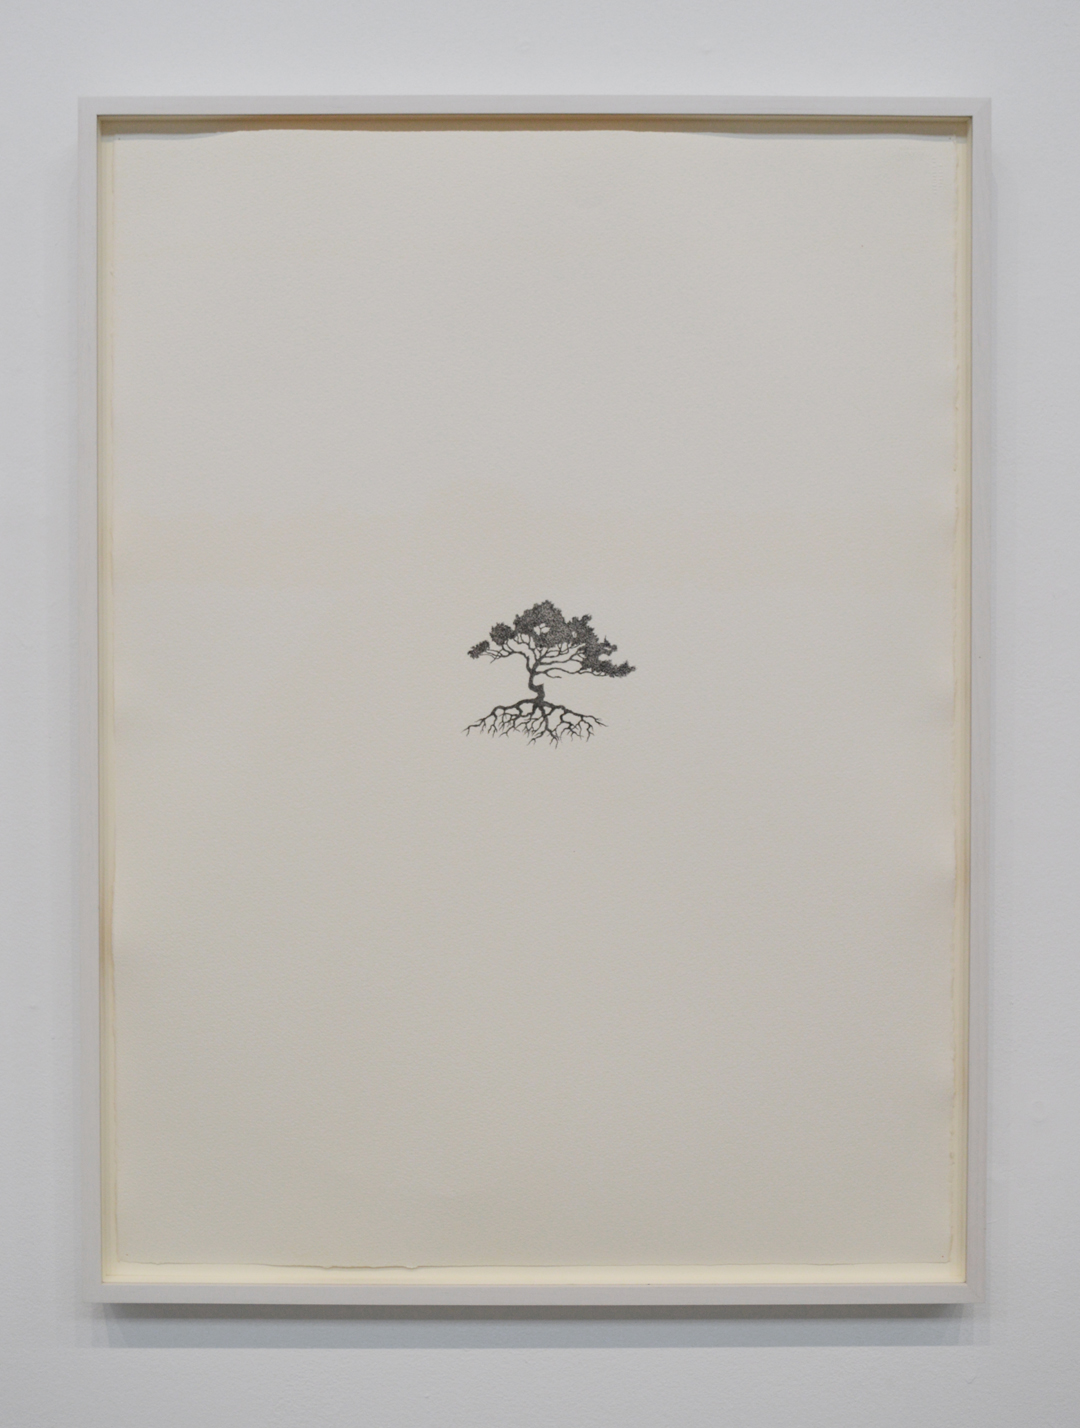 Reinhard Reitzenstein Whitebark Pine #1 (pinus albicaulis) 2014